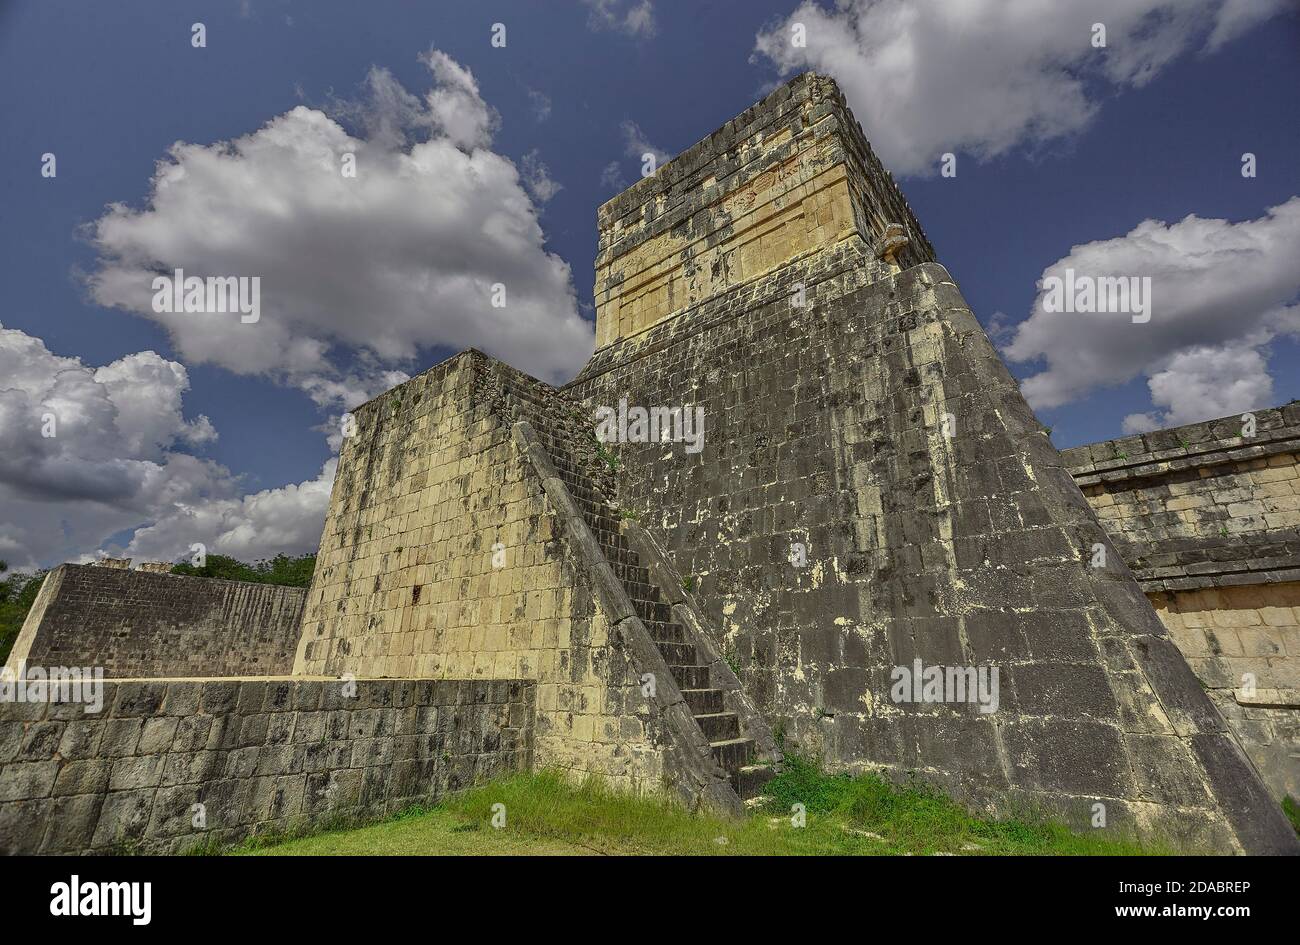 Vista laterale-posteriore del Tempio della Giaguaro nel complesso archeologico di Chichen Itza in Messico Foto Stock